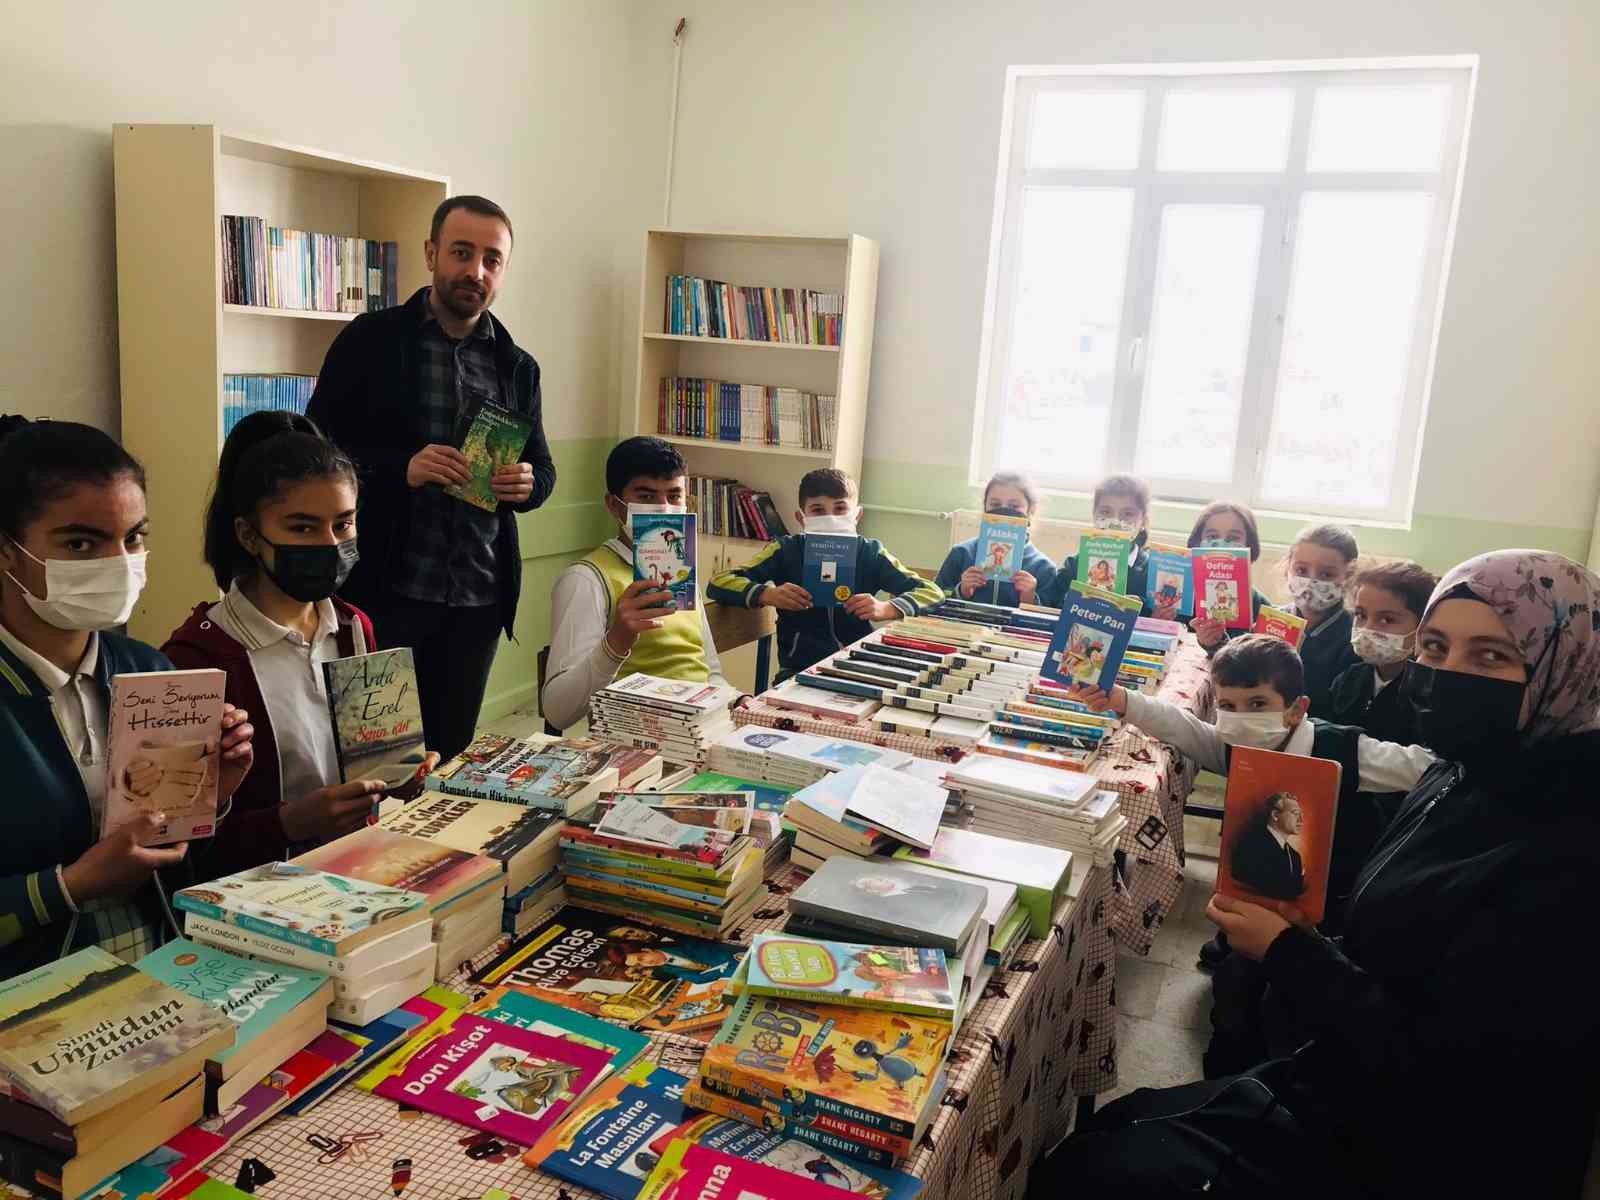 Fedakar öğretmen görev yaptığı köy okuluna kütüphane kazandırdı #yozgat